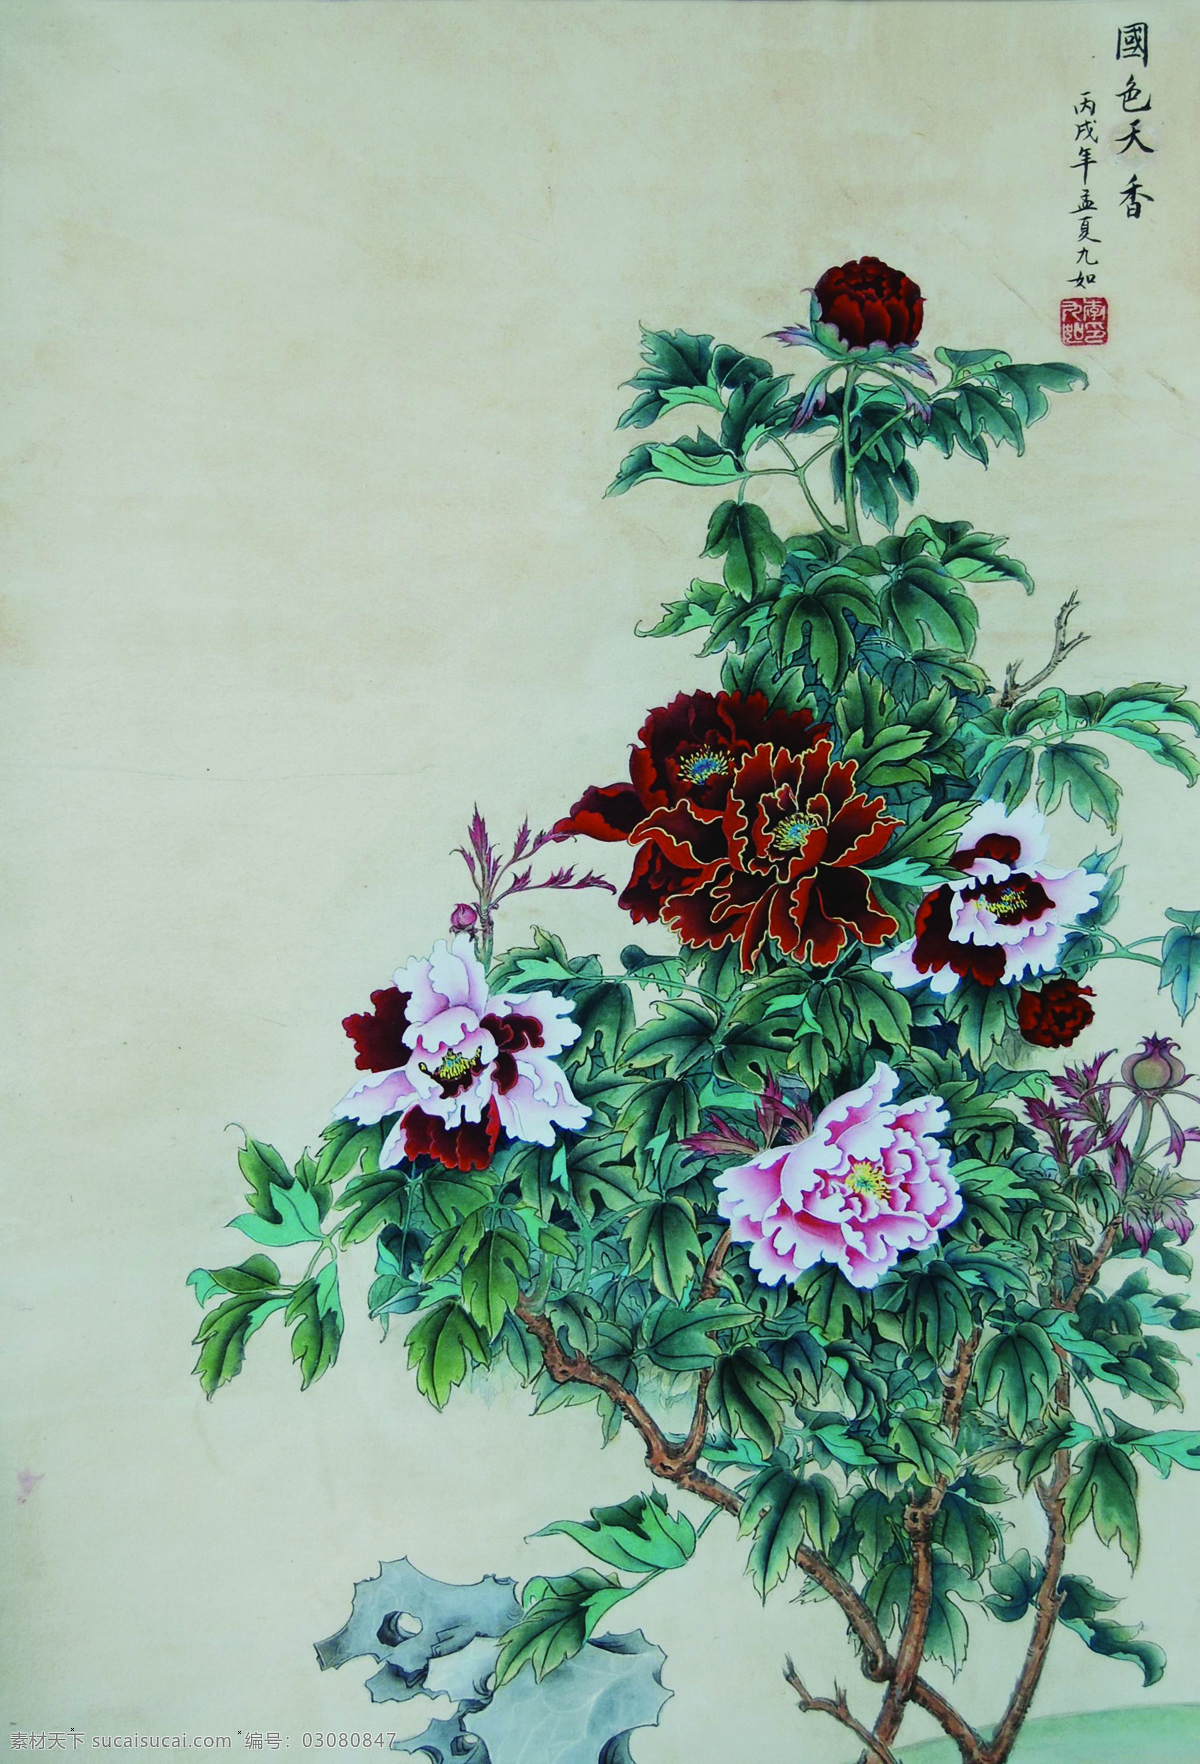 国色天香 红 绘画 绘画书法 牡丹 树叶 文化艺术 白 岩石 中国画 印章 装饰素材 雕刻 图案